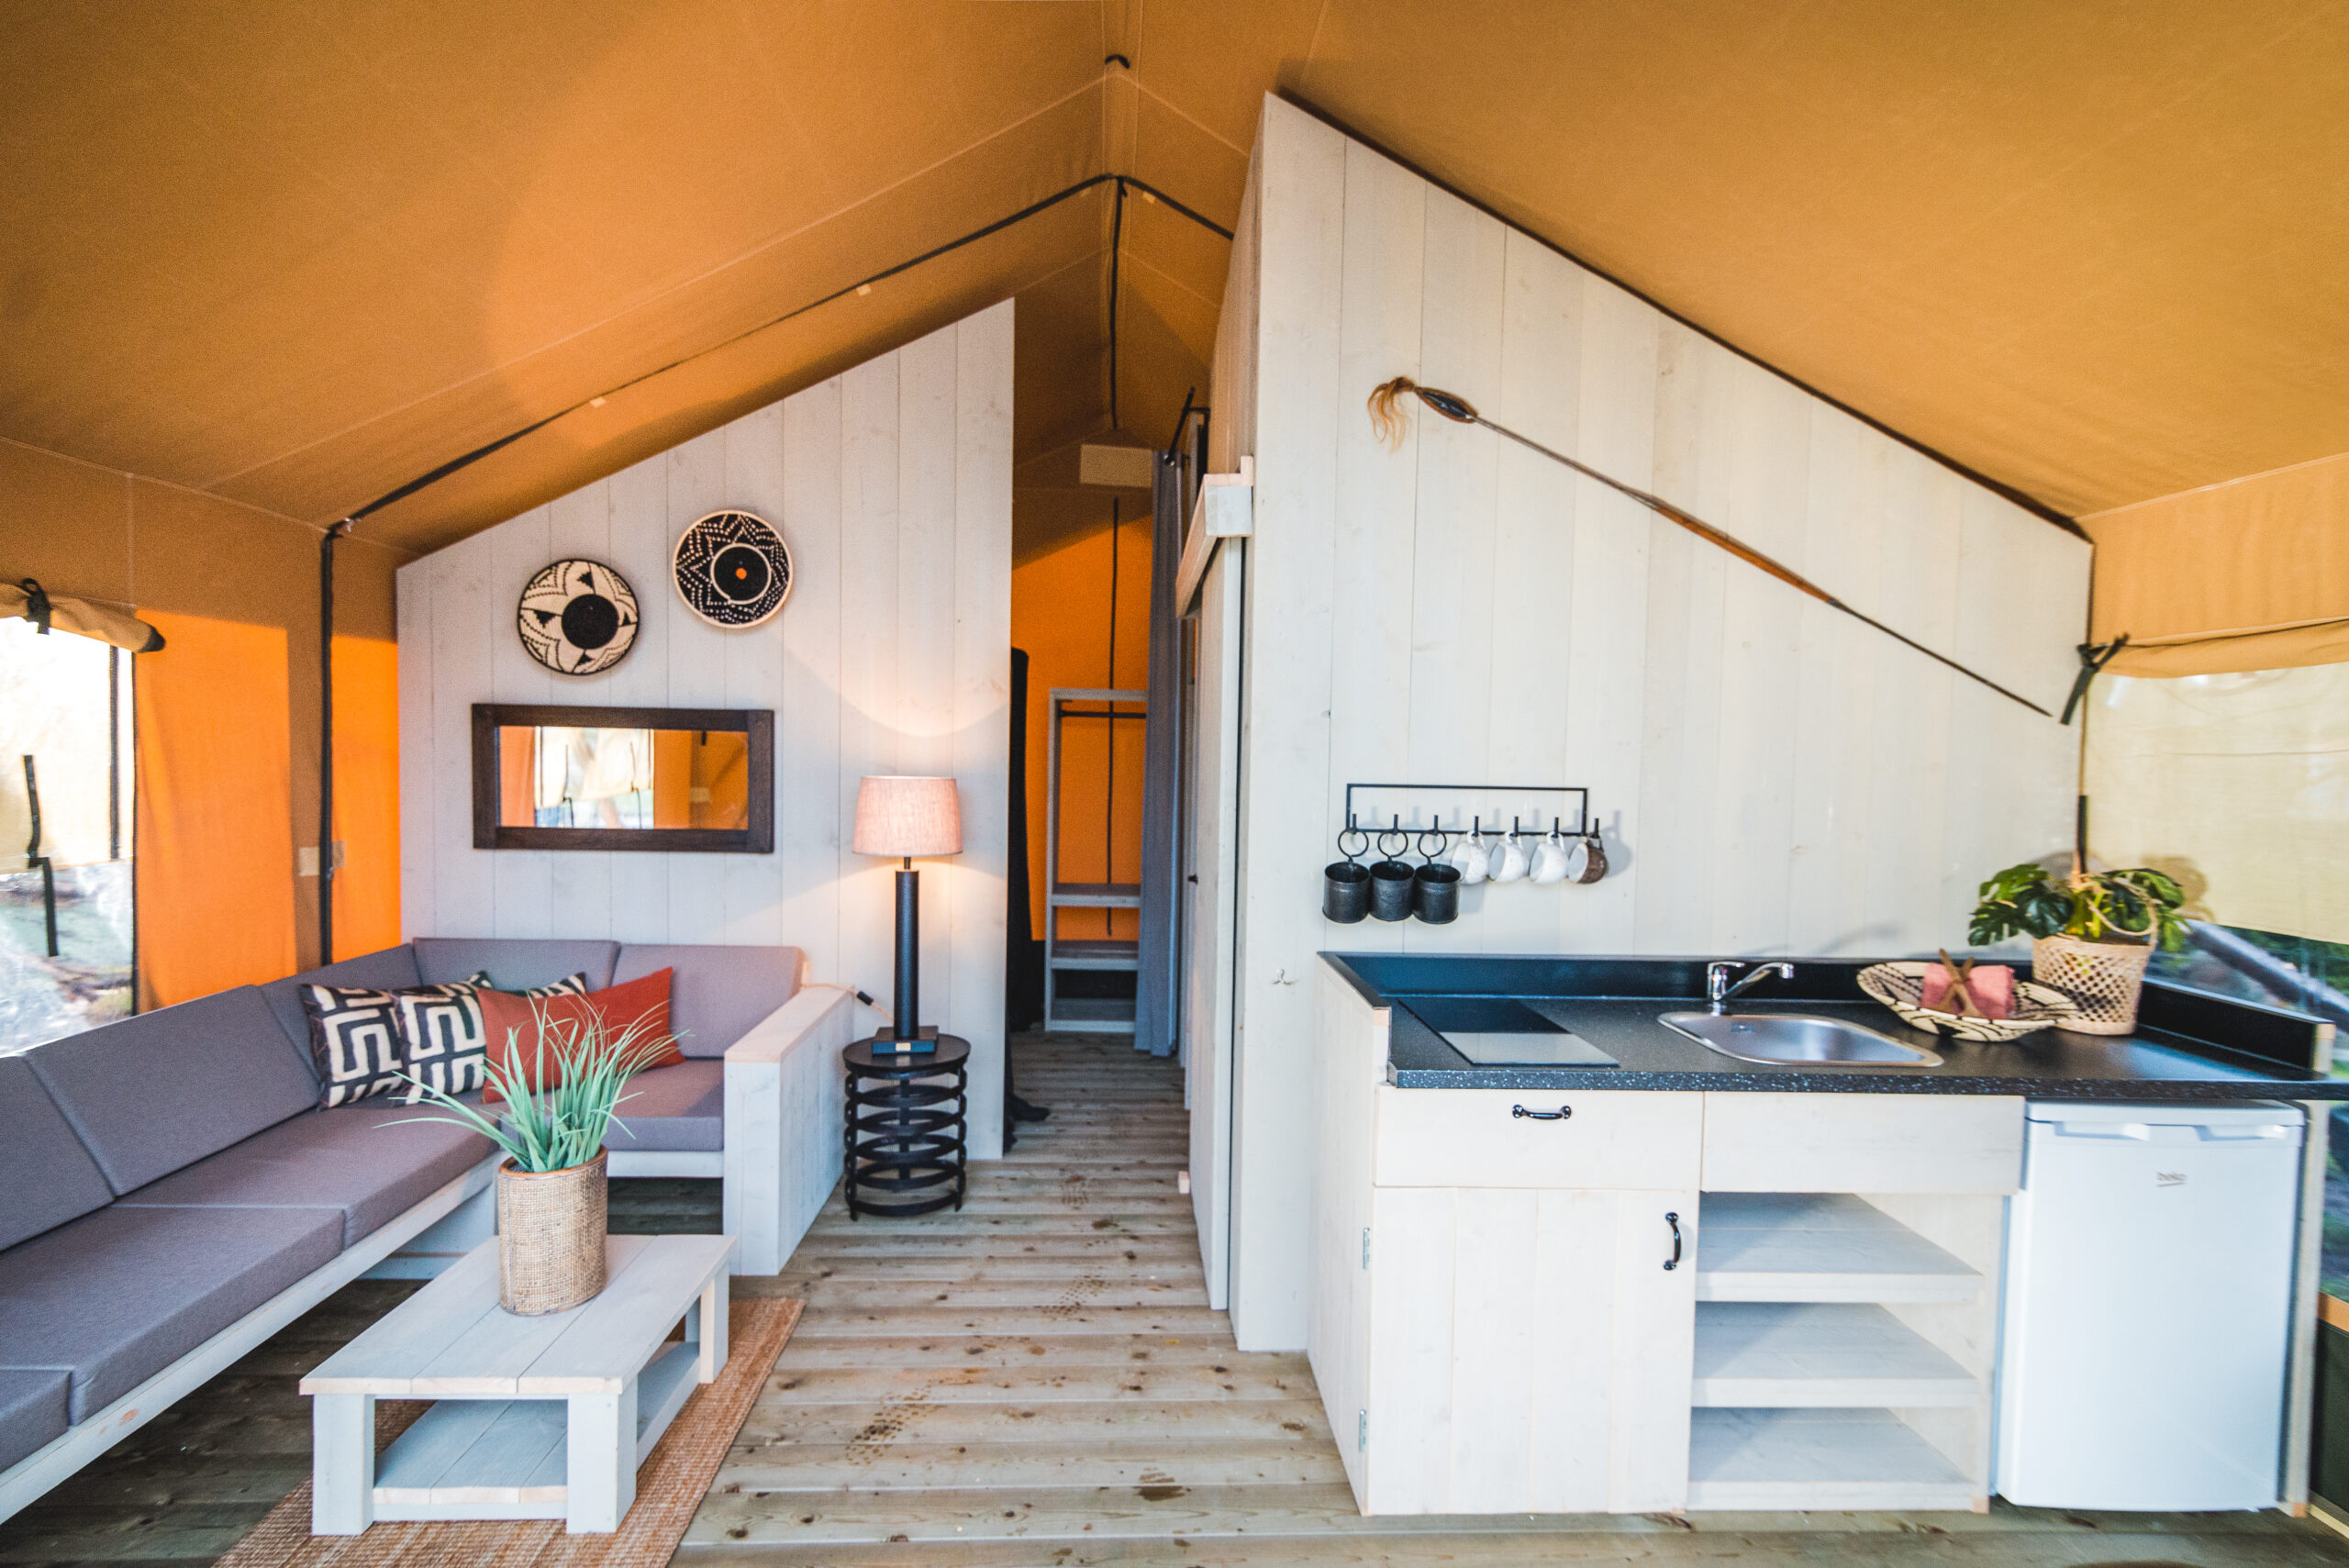 Conseils & idées d’aménagement intérieur de votre tente Safari